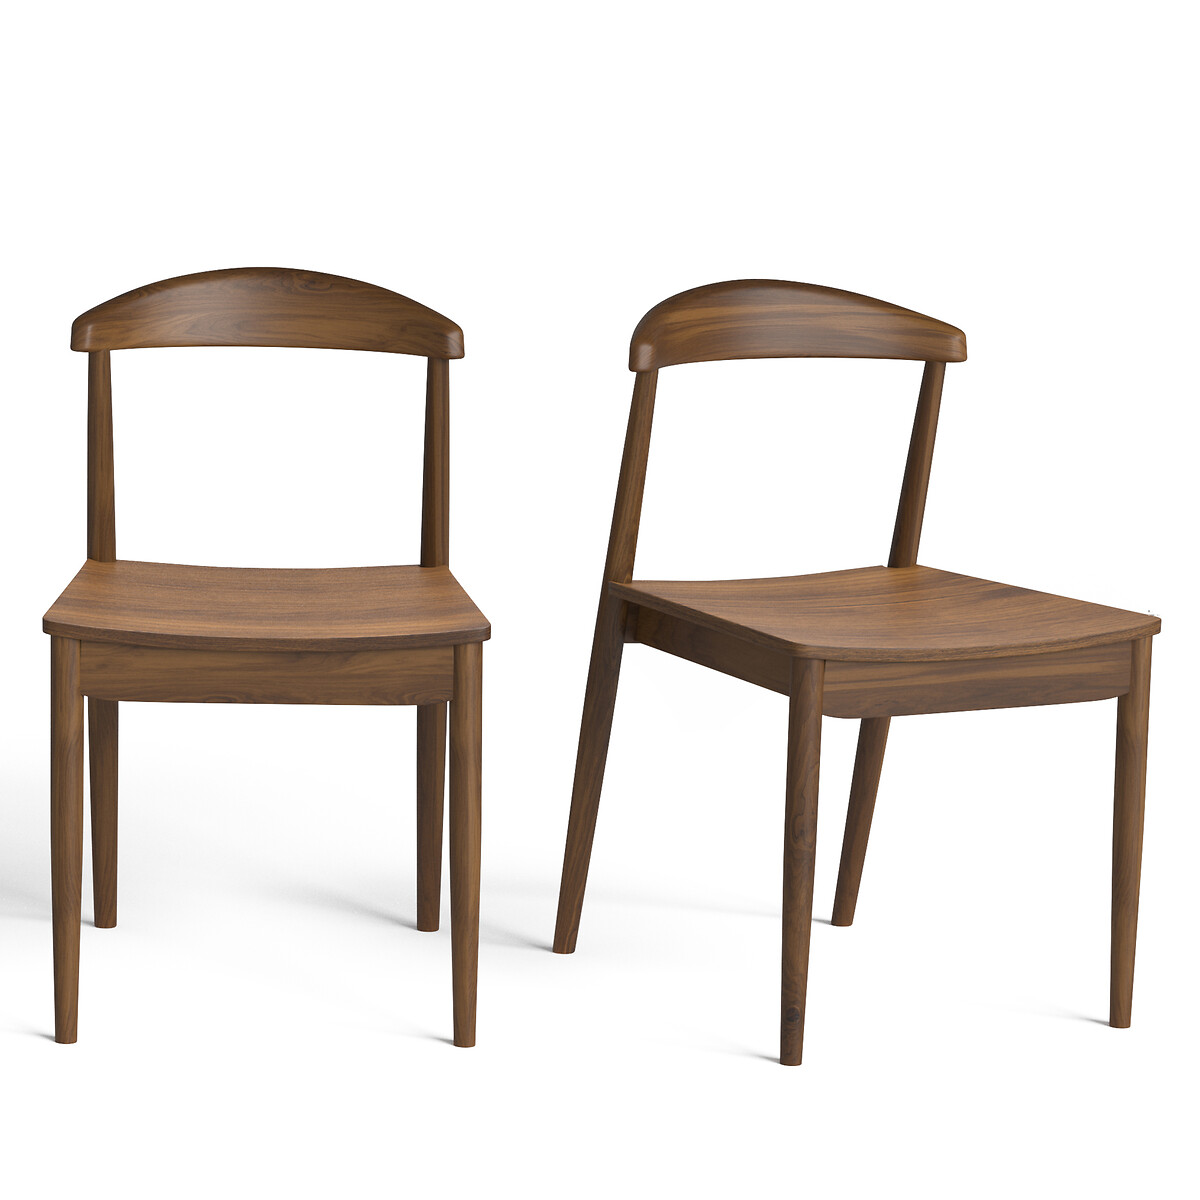 Комплект из 2 стульев, Galb La Redoute комплект из 2 каштановый цена и фото